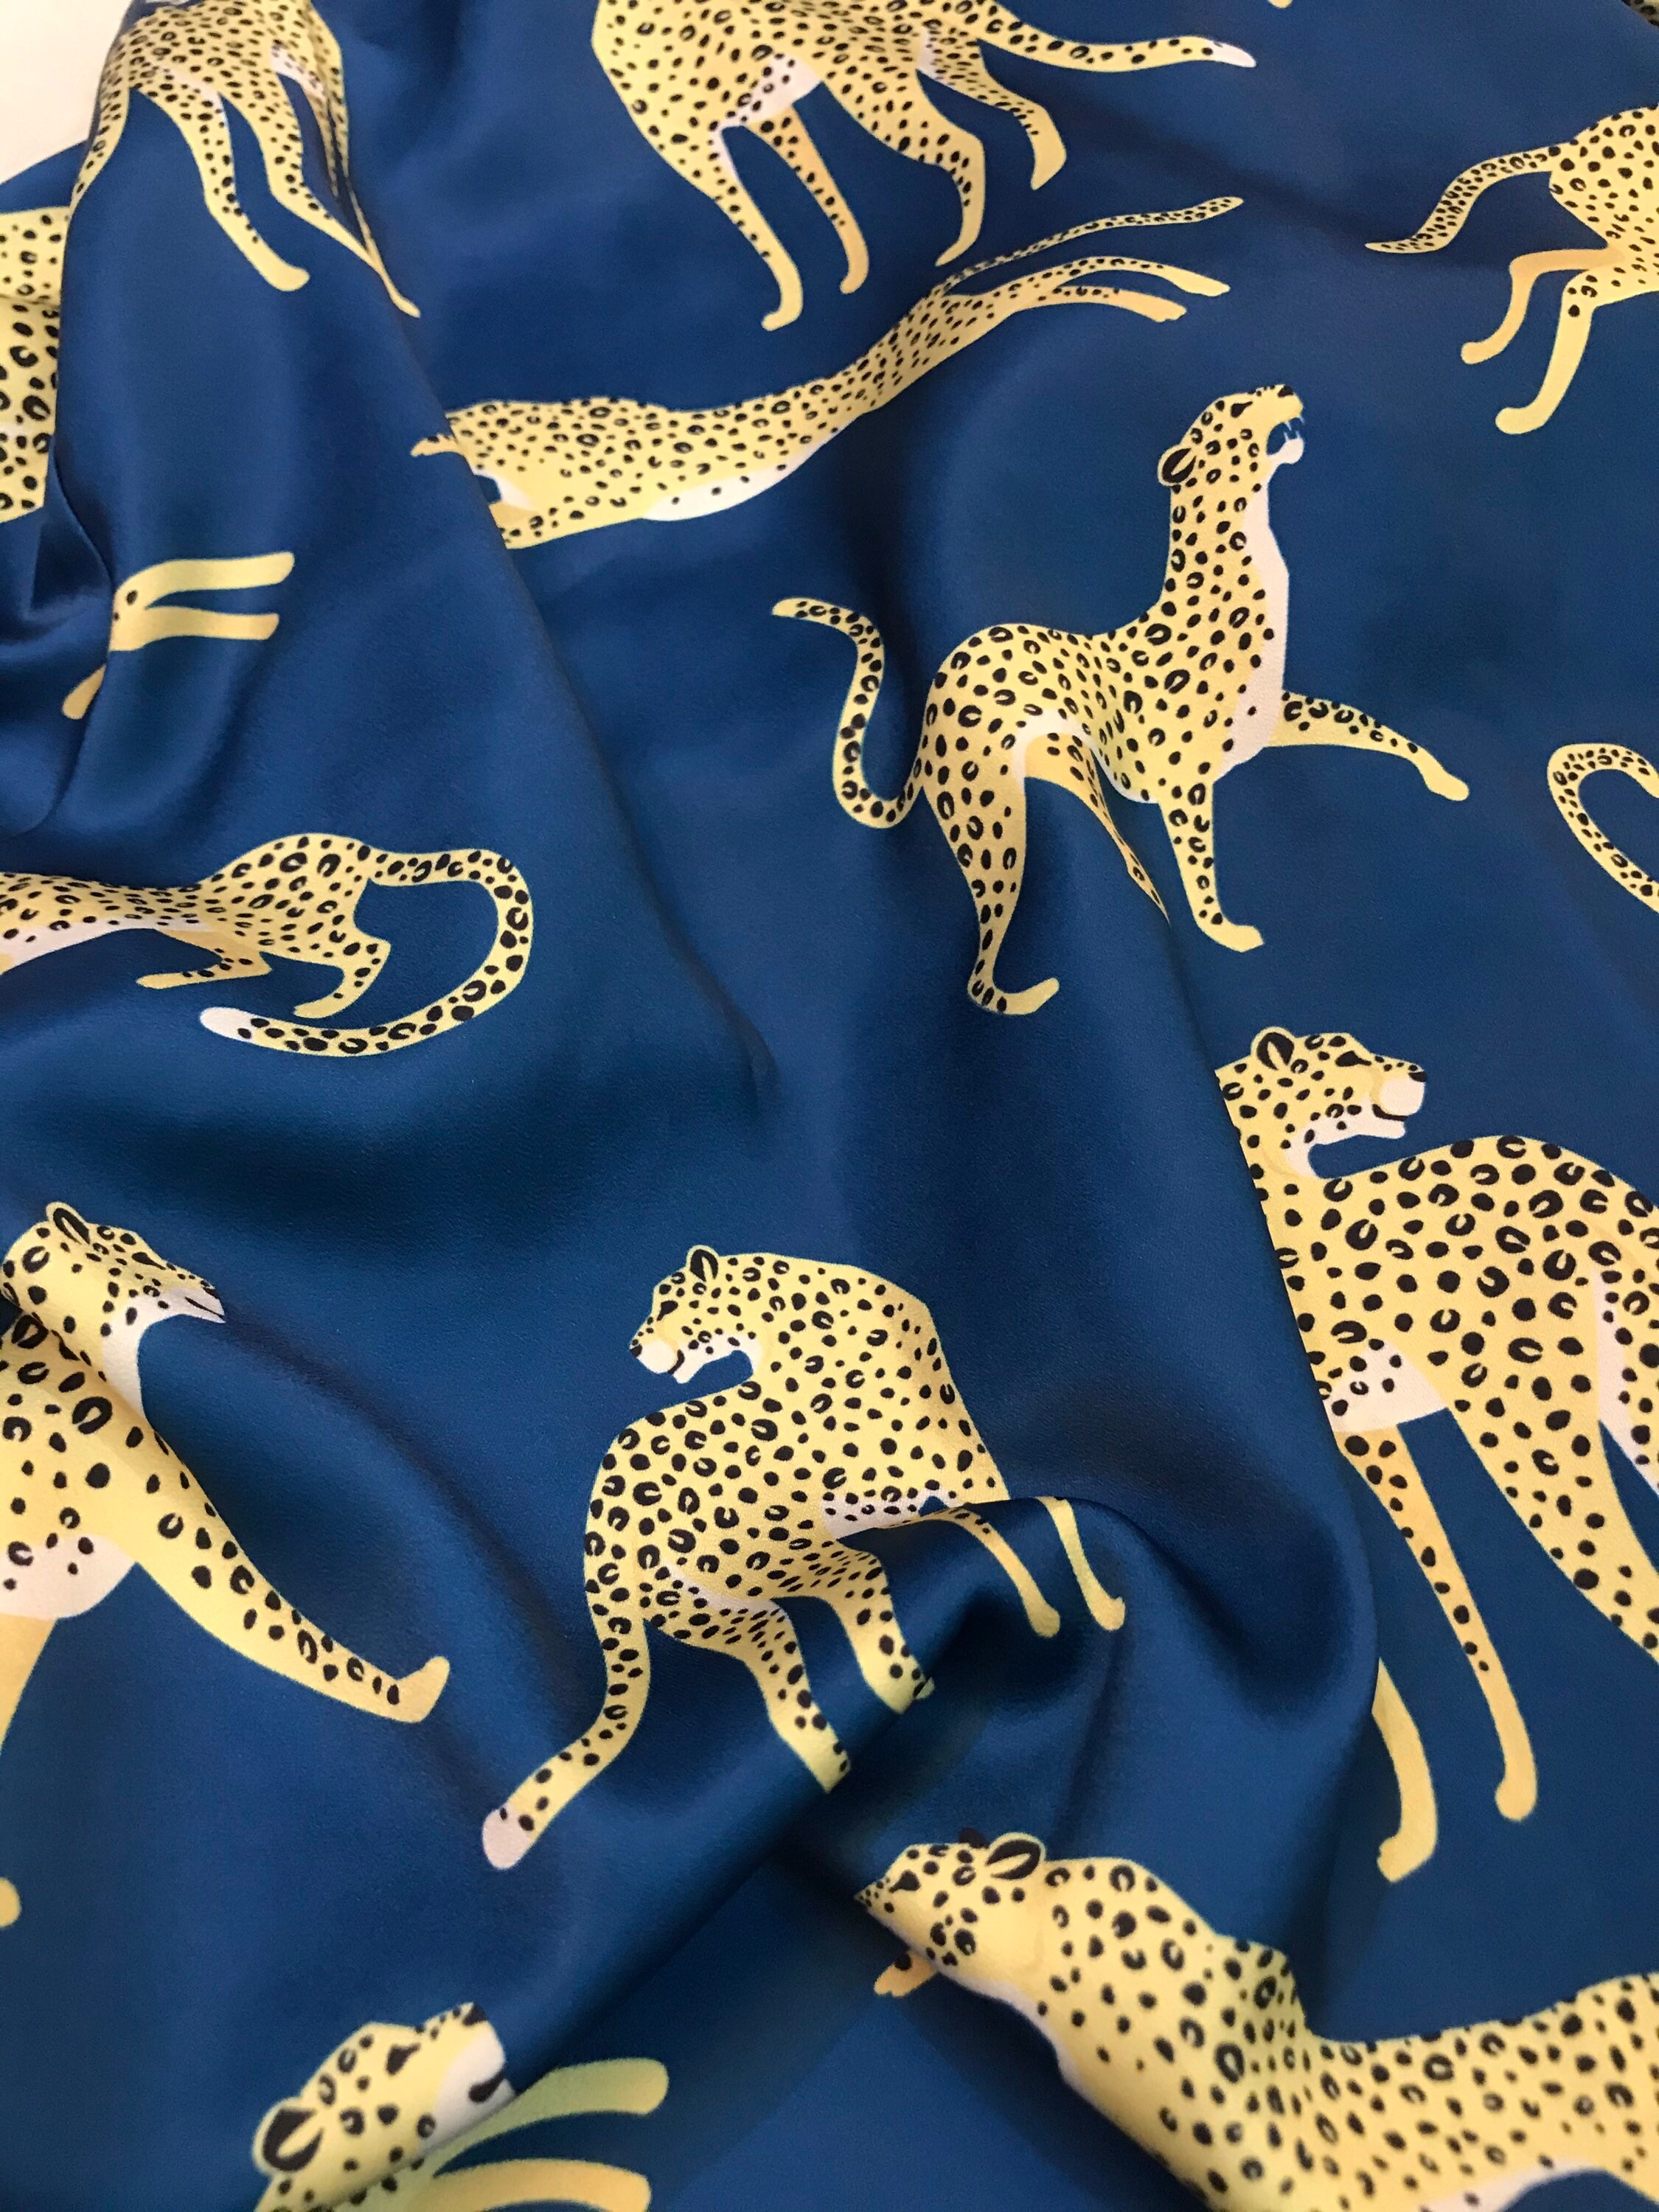 Leopard /Cheetah in Blue Navy Summer Short Sleeves Short | Etsy